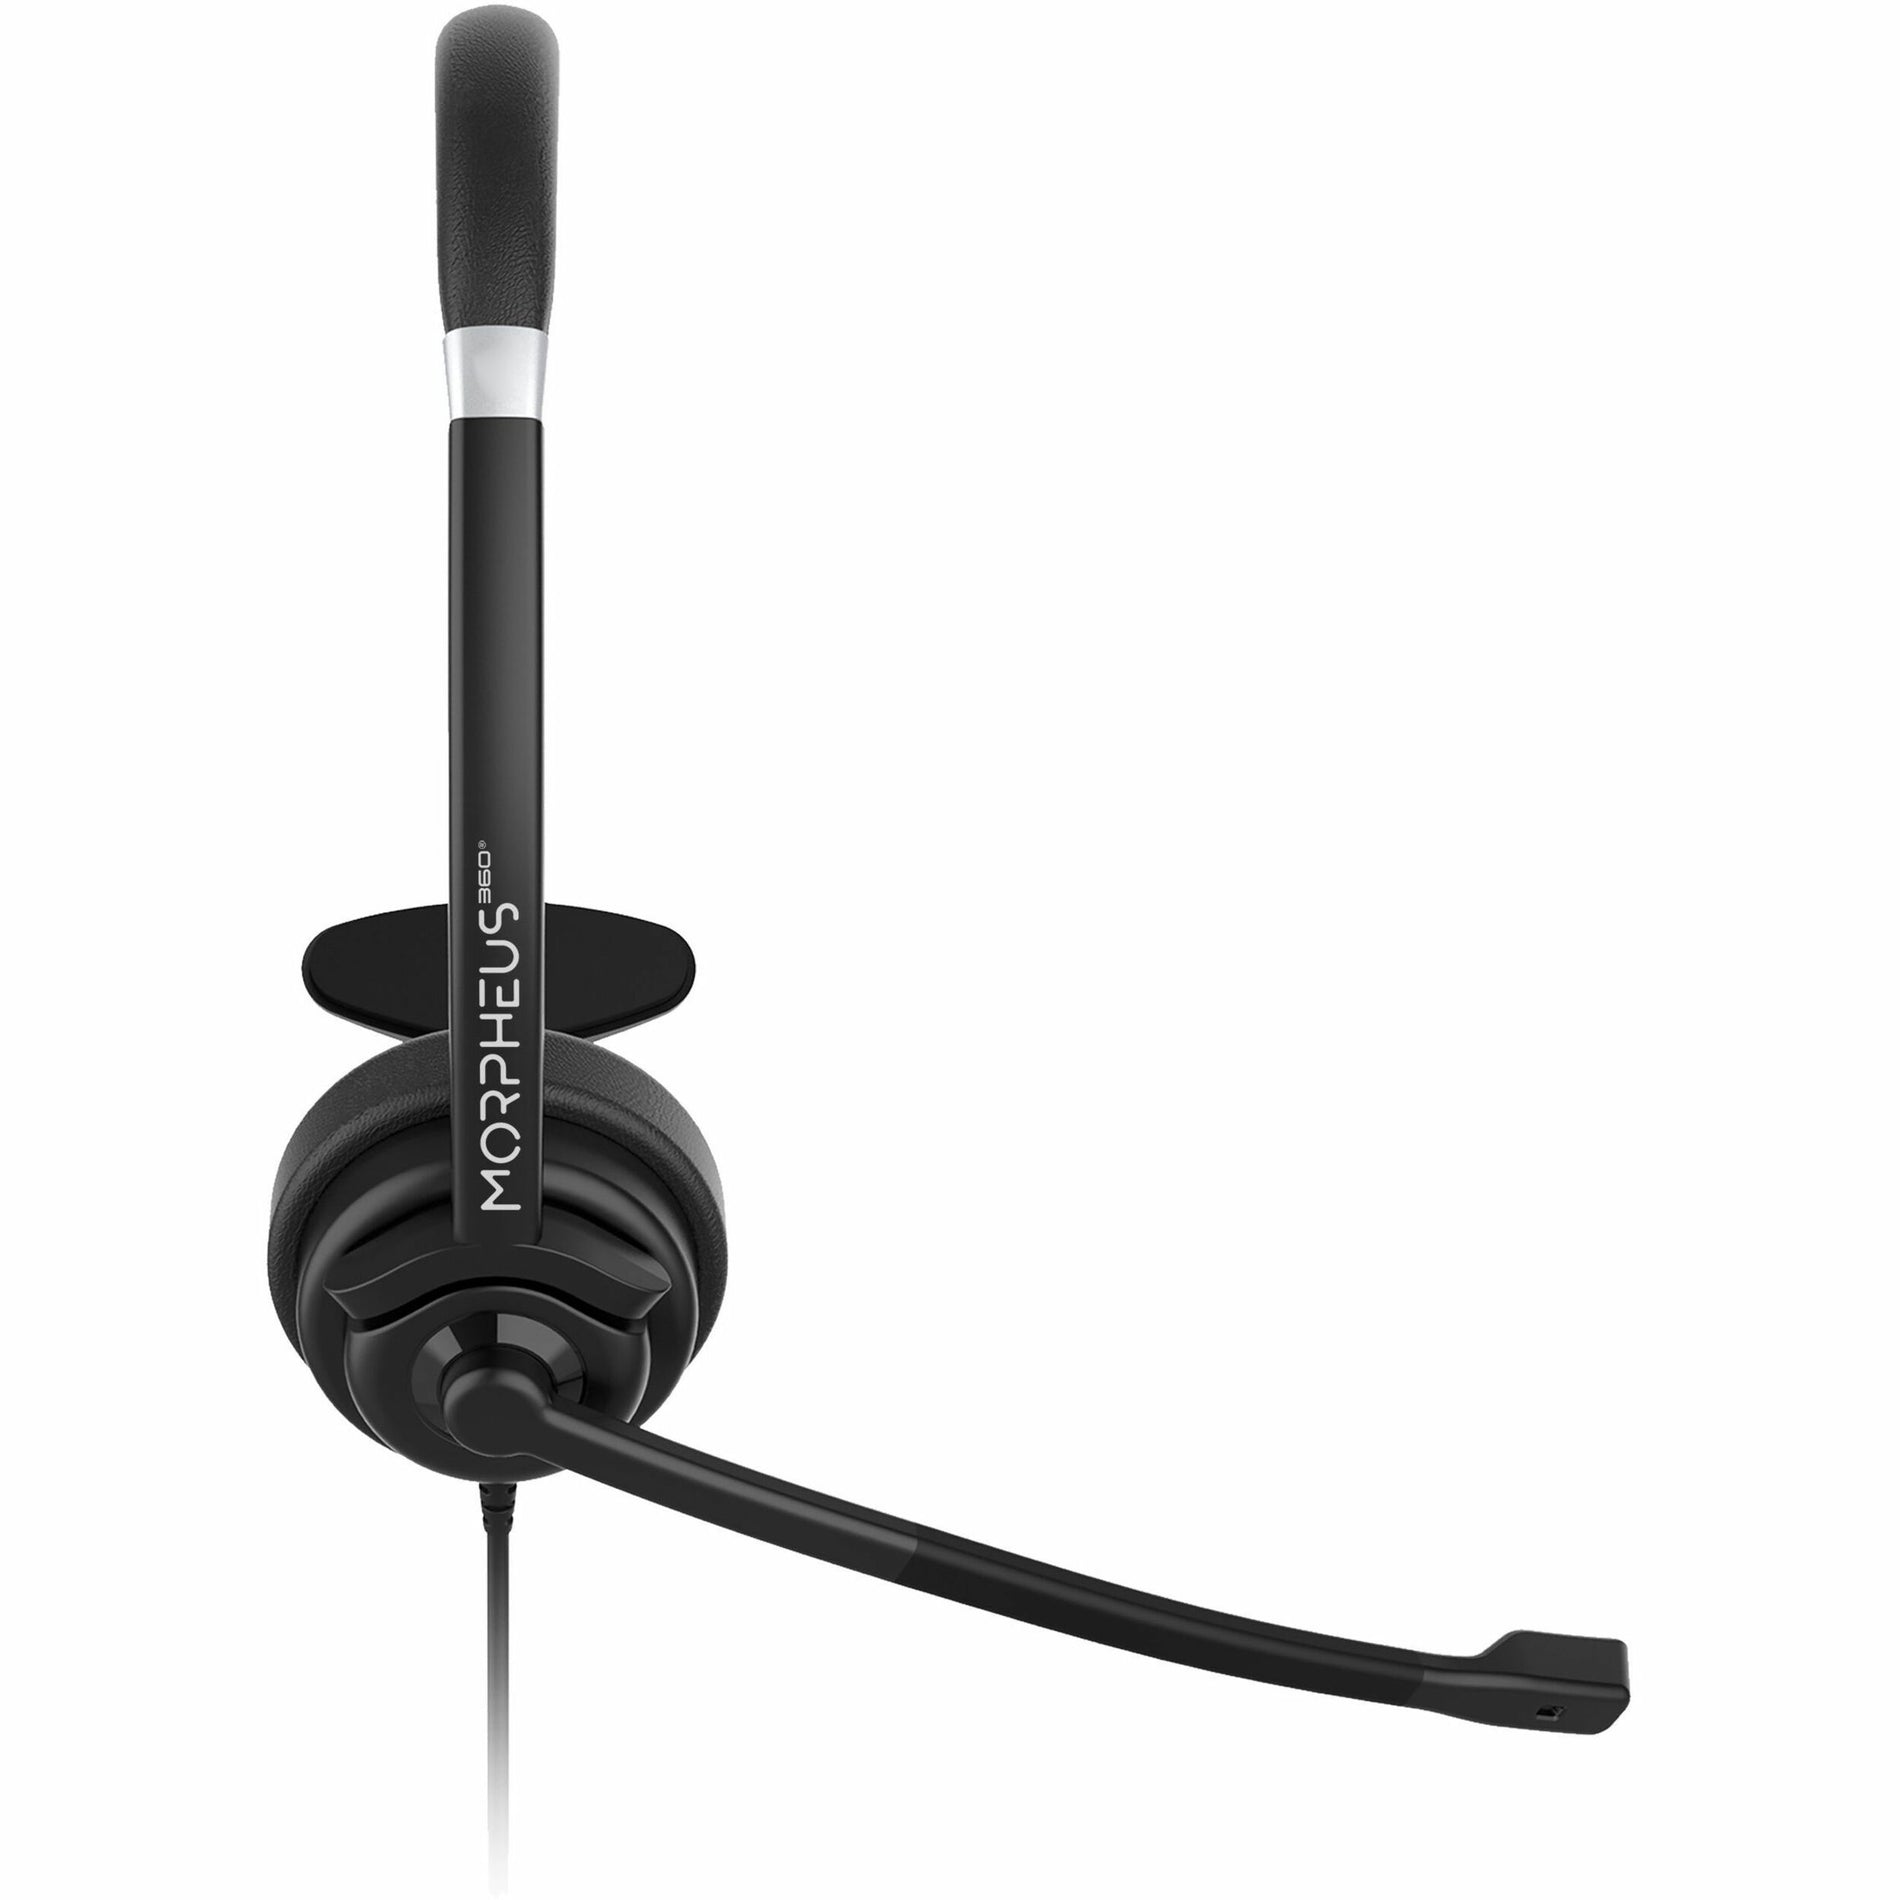 Casque mono USB Morpheus 360 HS5200MU avec microphone à perche confortable brancher et jouer léger.